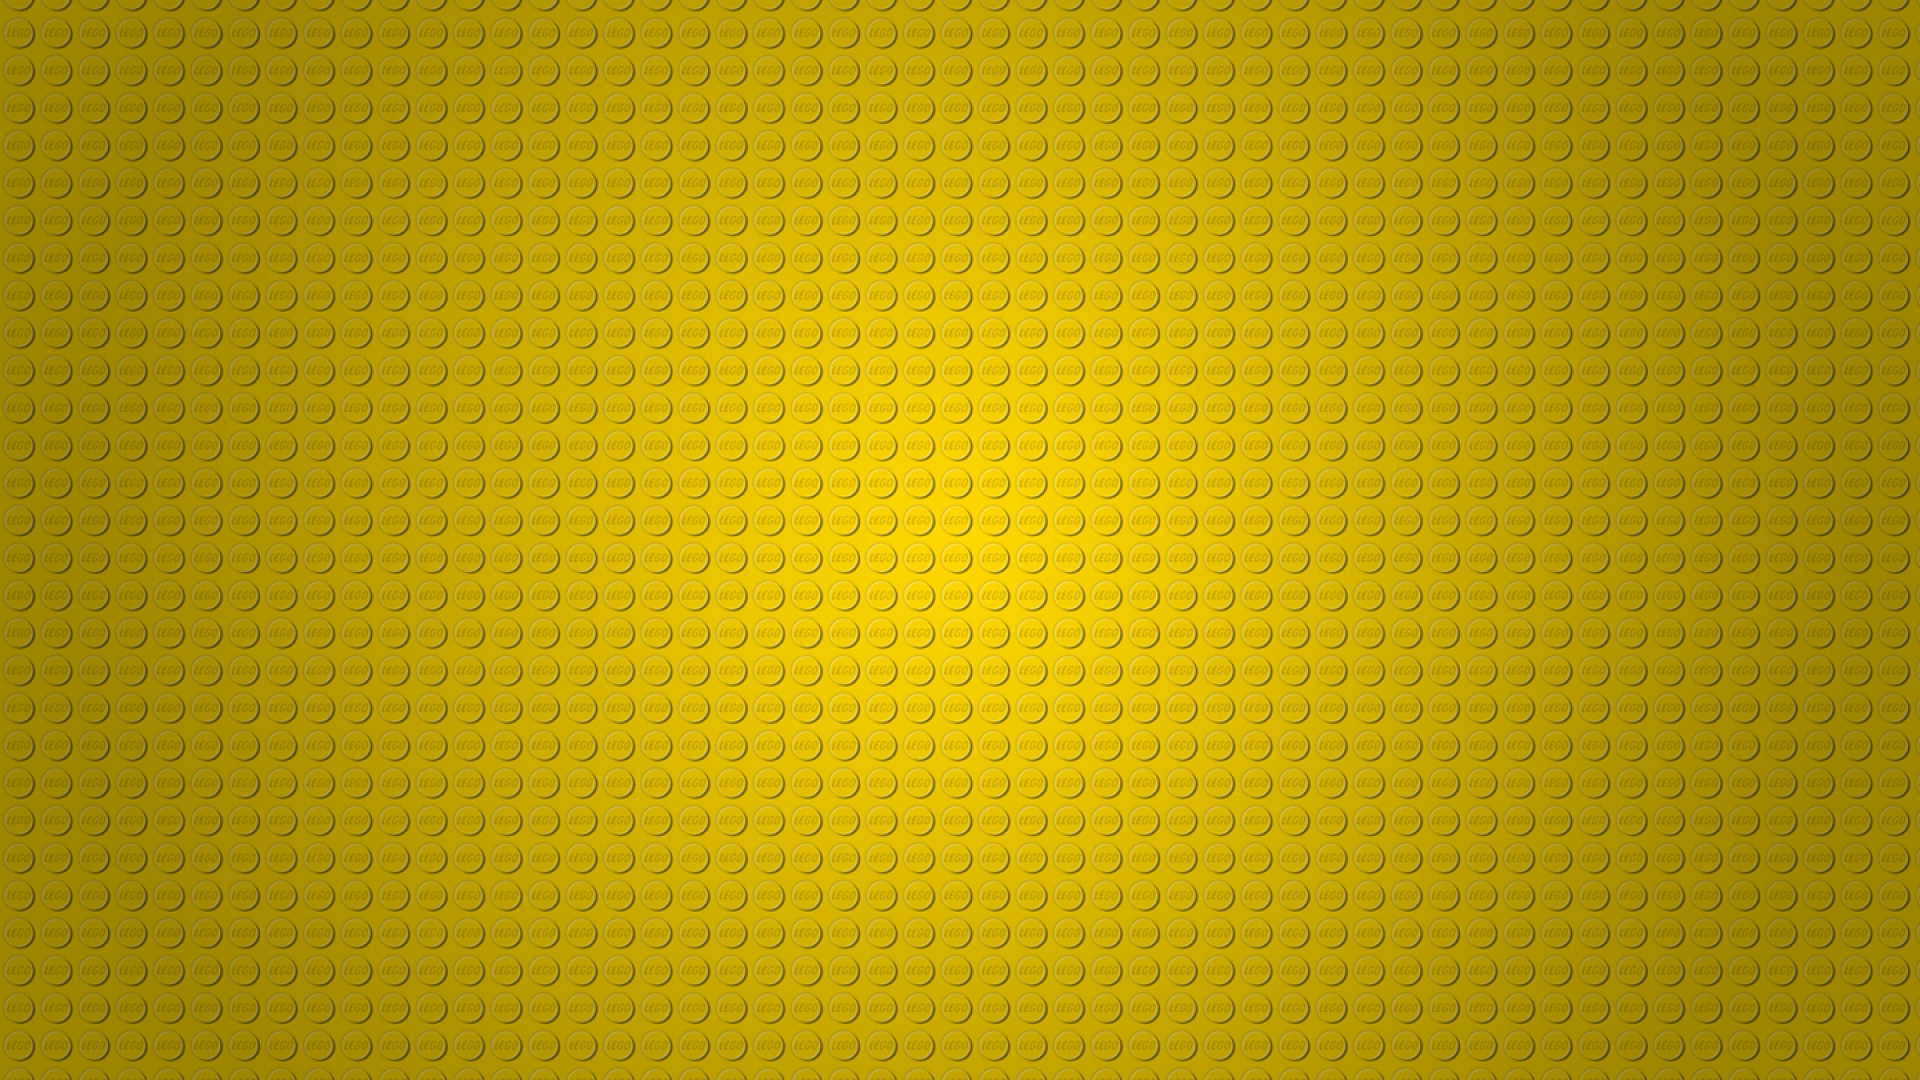 Lego Board Wallpaper HD